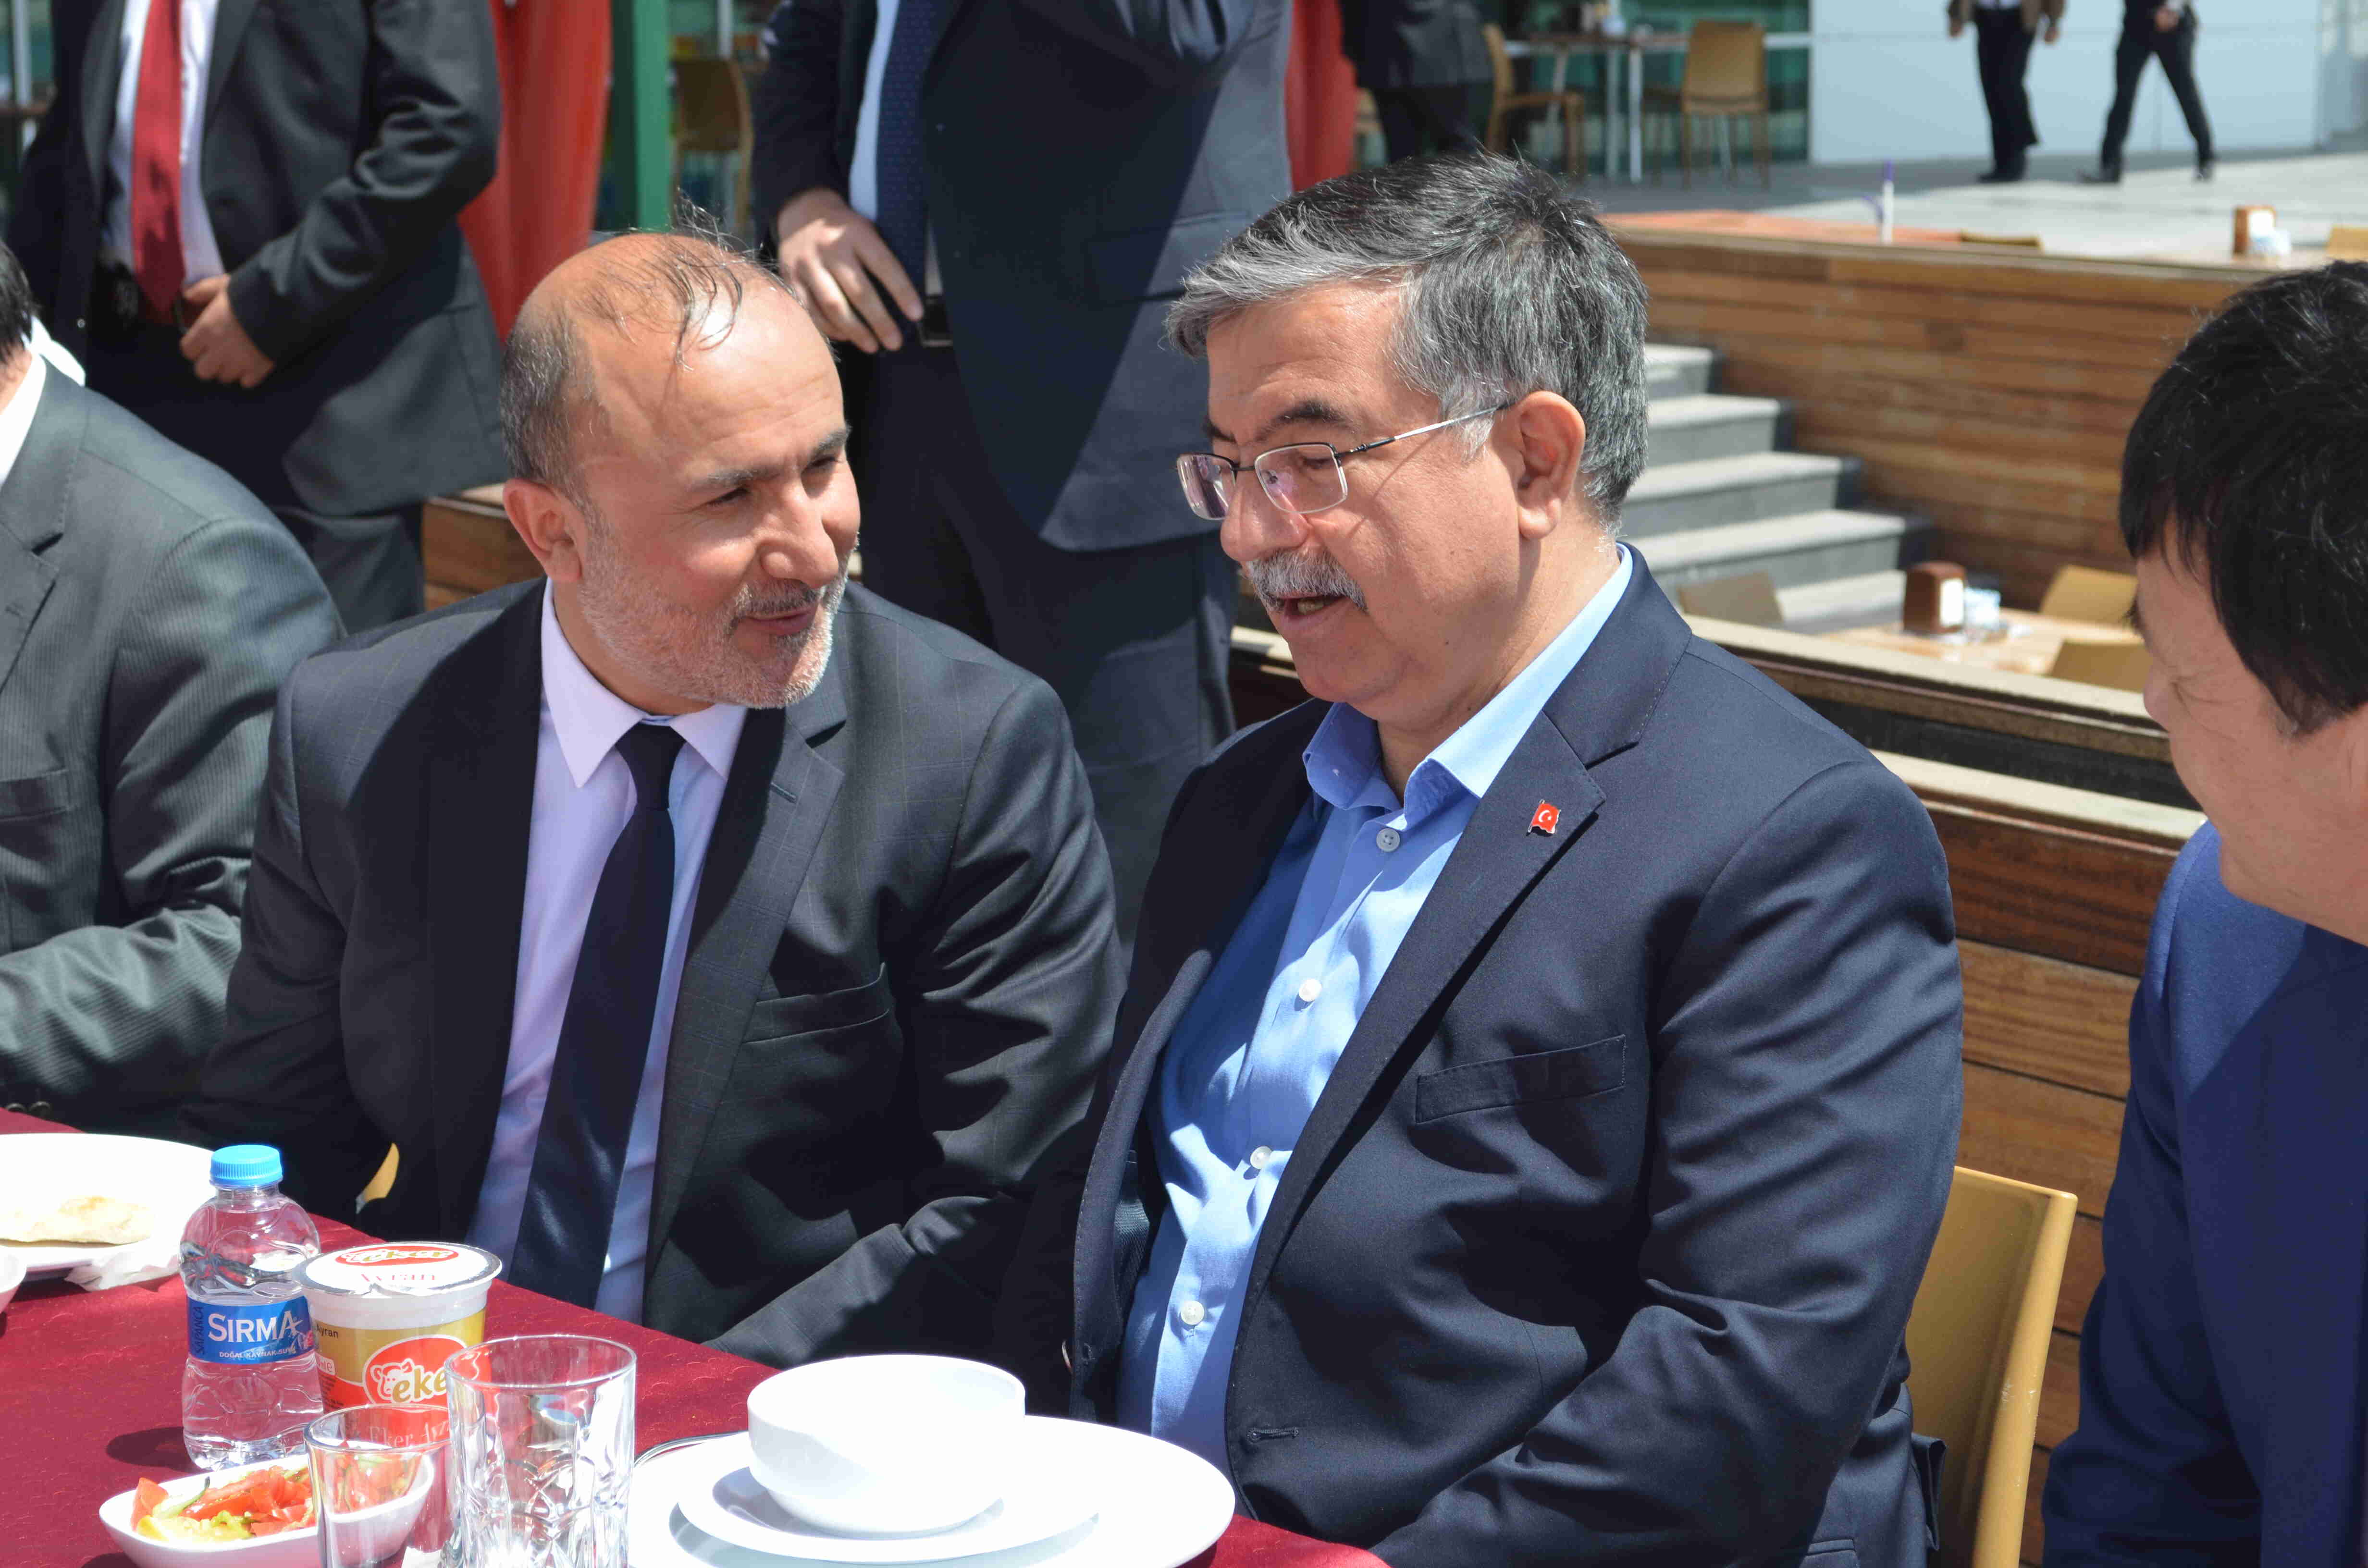 Kırgızistan Cumhuriyeti Ankara Büyükelçisi İbragim Dzhunusov’un KAYSERİ ziyaretini Başkent Platformu Genel Başkanı, Kırgızistan Kayseri Fahri Konsolosu Dr. Mustafa Kurt’la birlikte gerçekleştirdi..